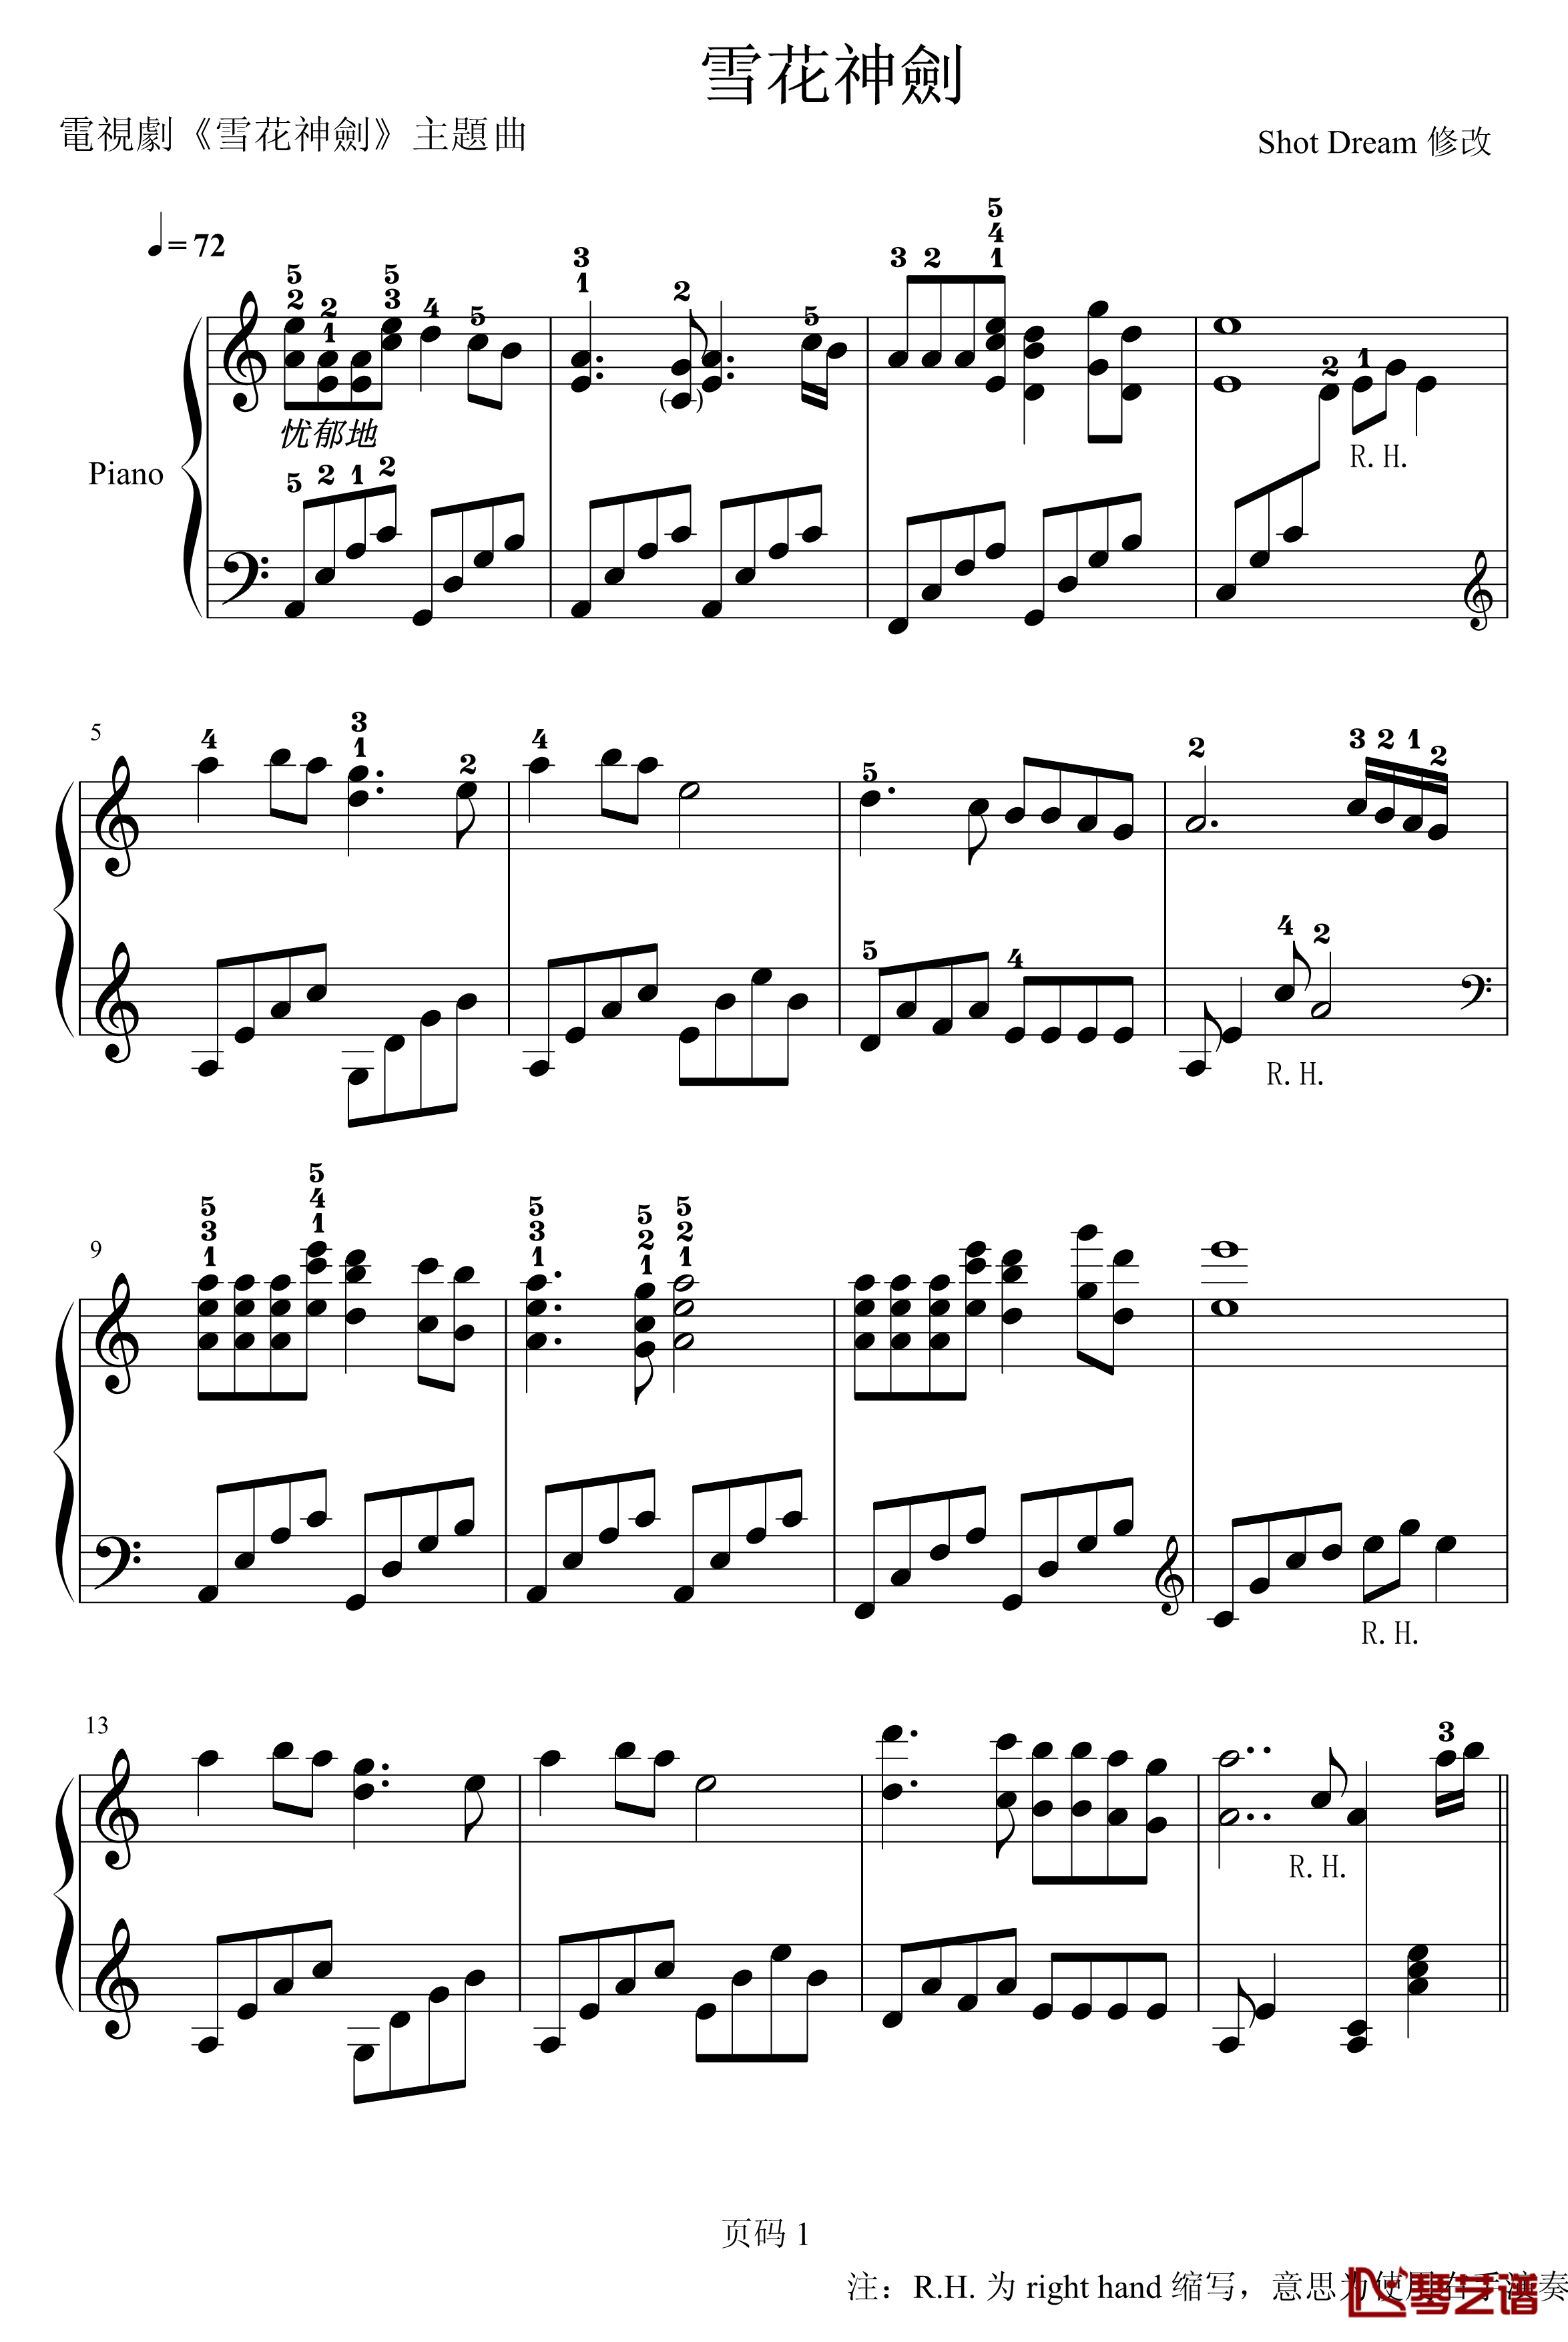 雪花神剑钢琴谱-演奏版-含指法-影视1